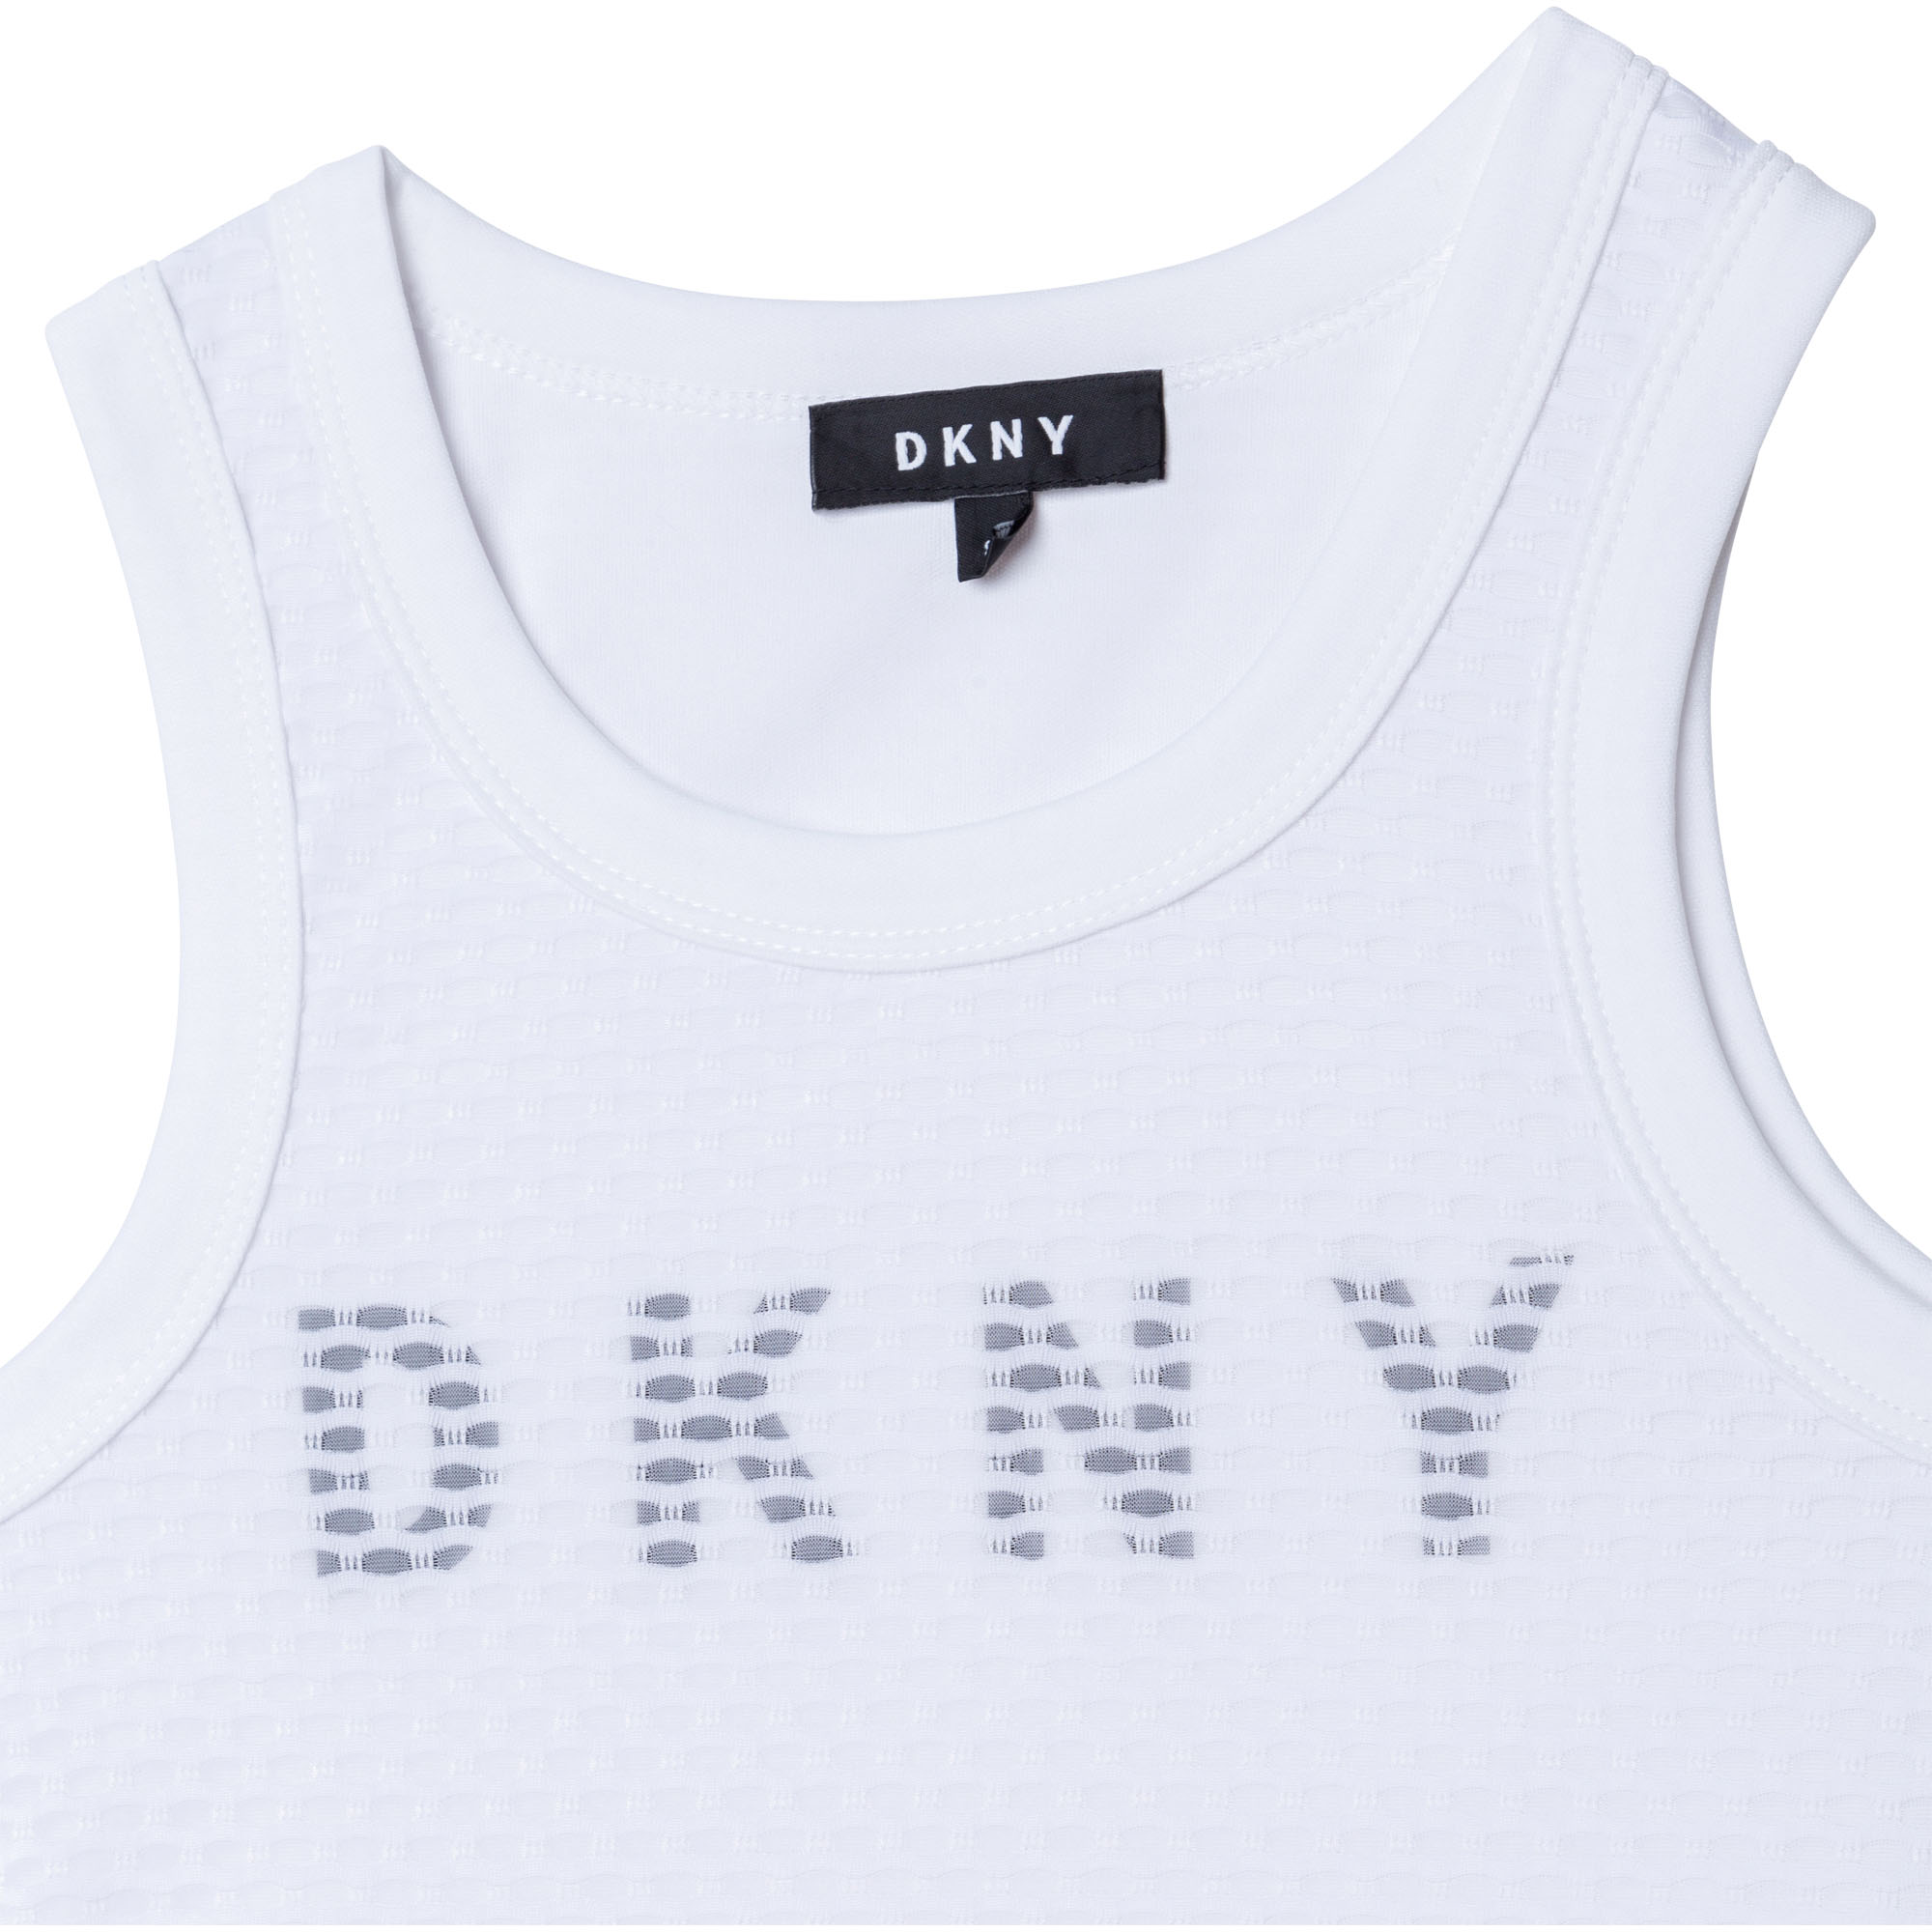 Débardeur avec logo DKNY pour FILLE